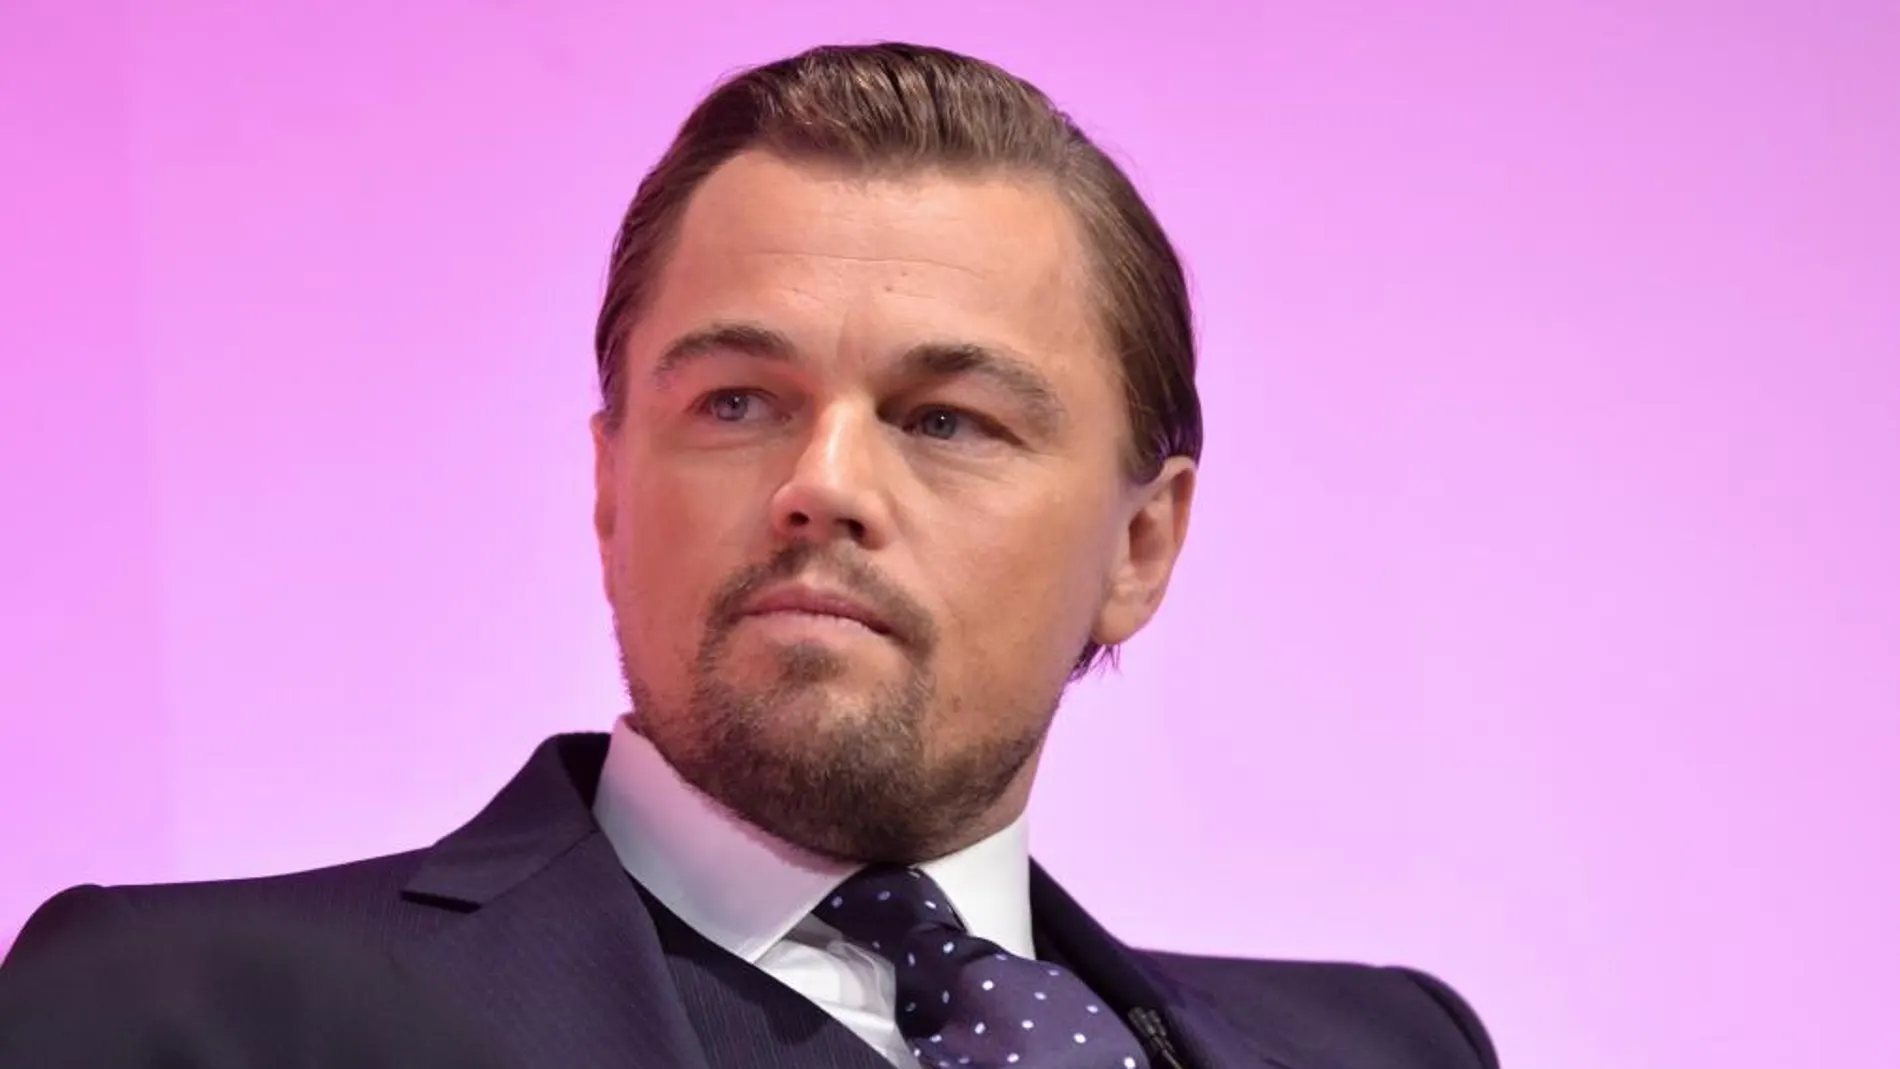 El actor Leonardo DiCaprio